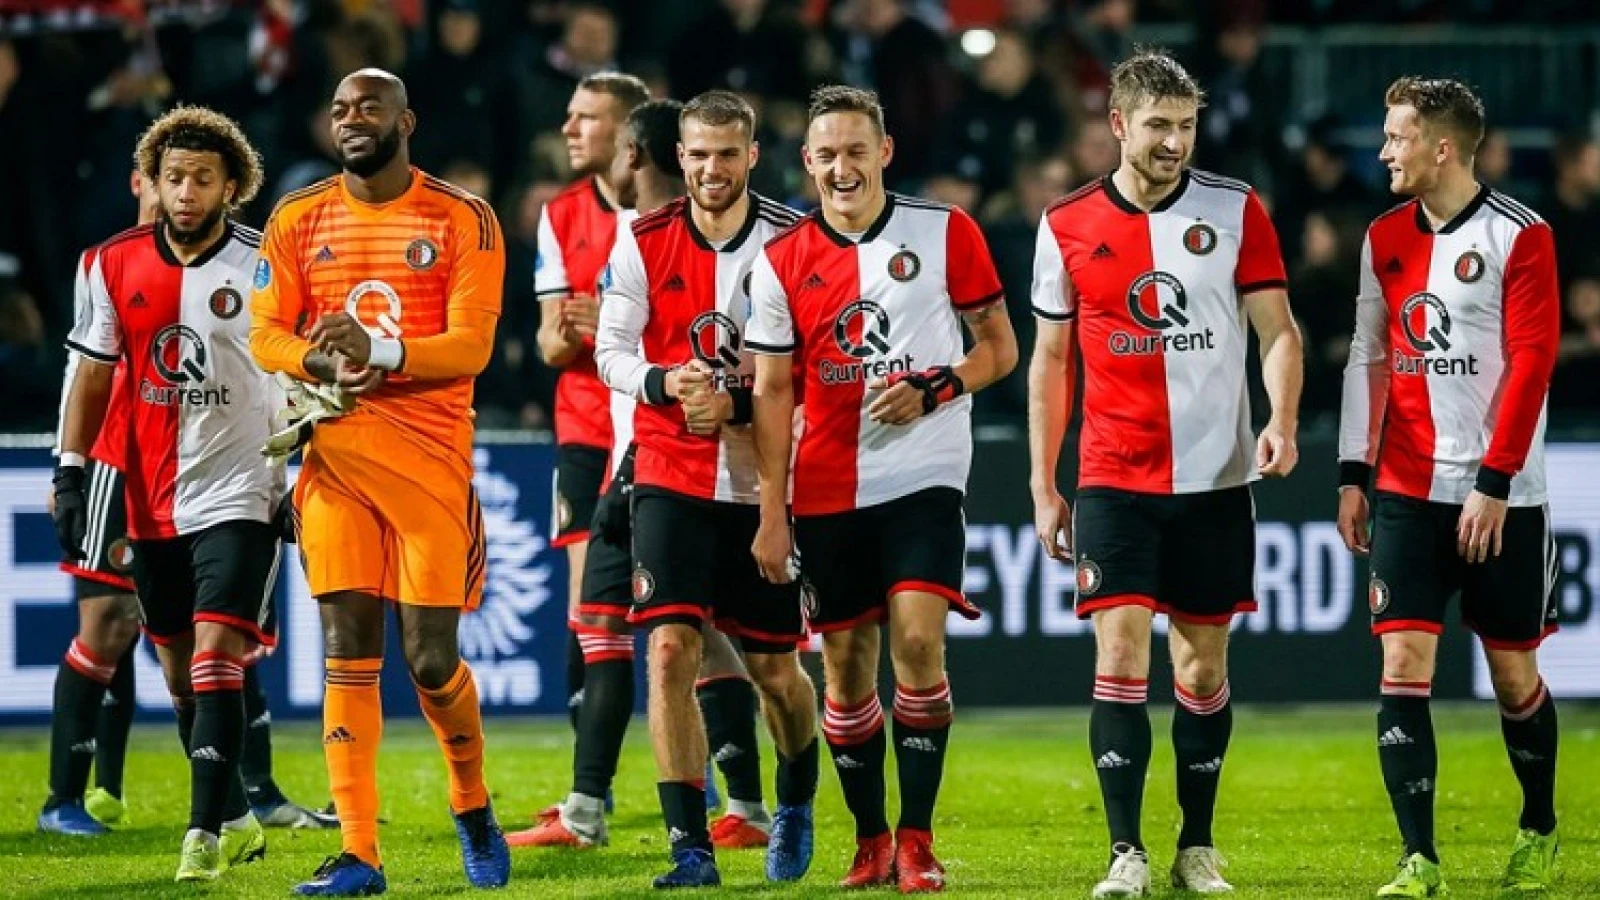 Informatie kaartverkoop bekerduel Feyenoord - Fortuna Sittard 